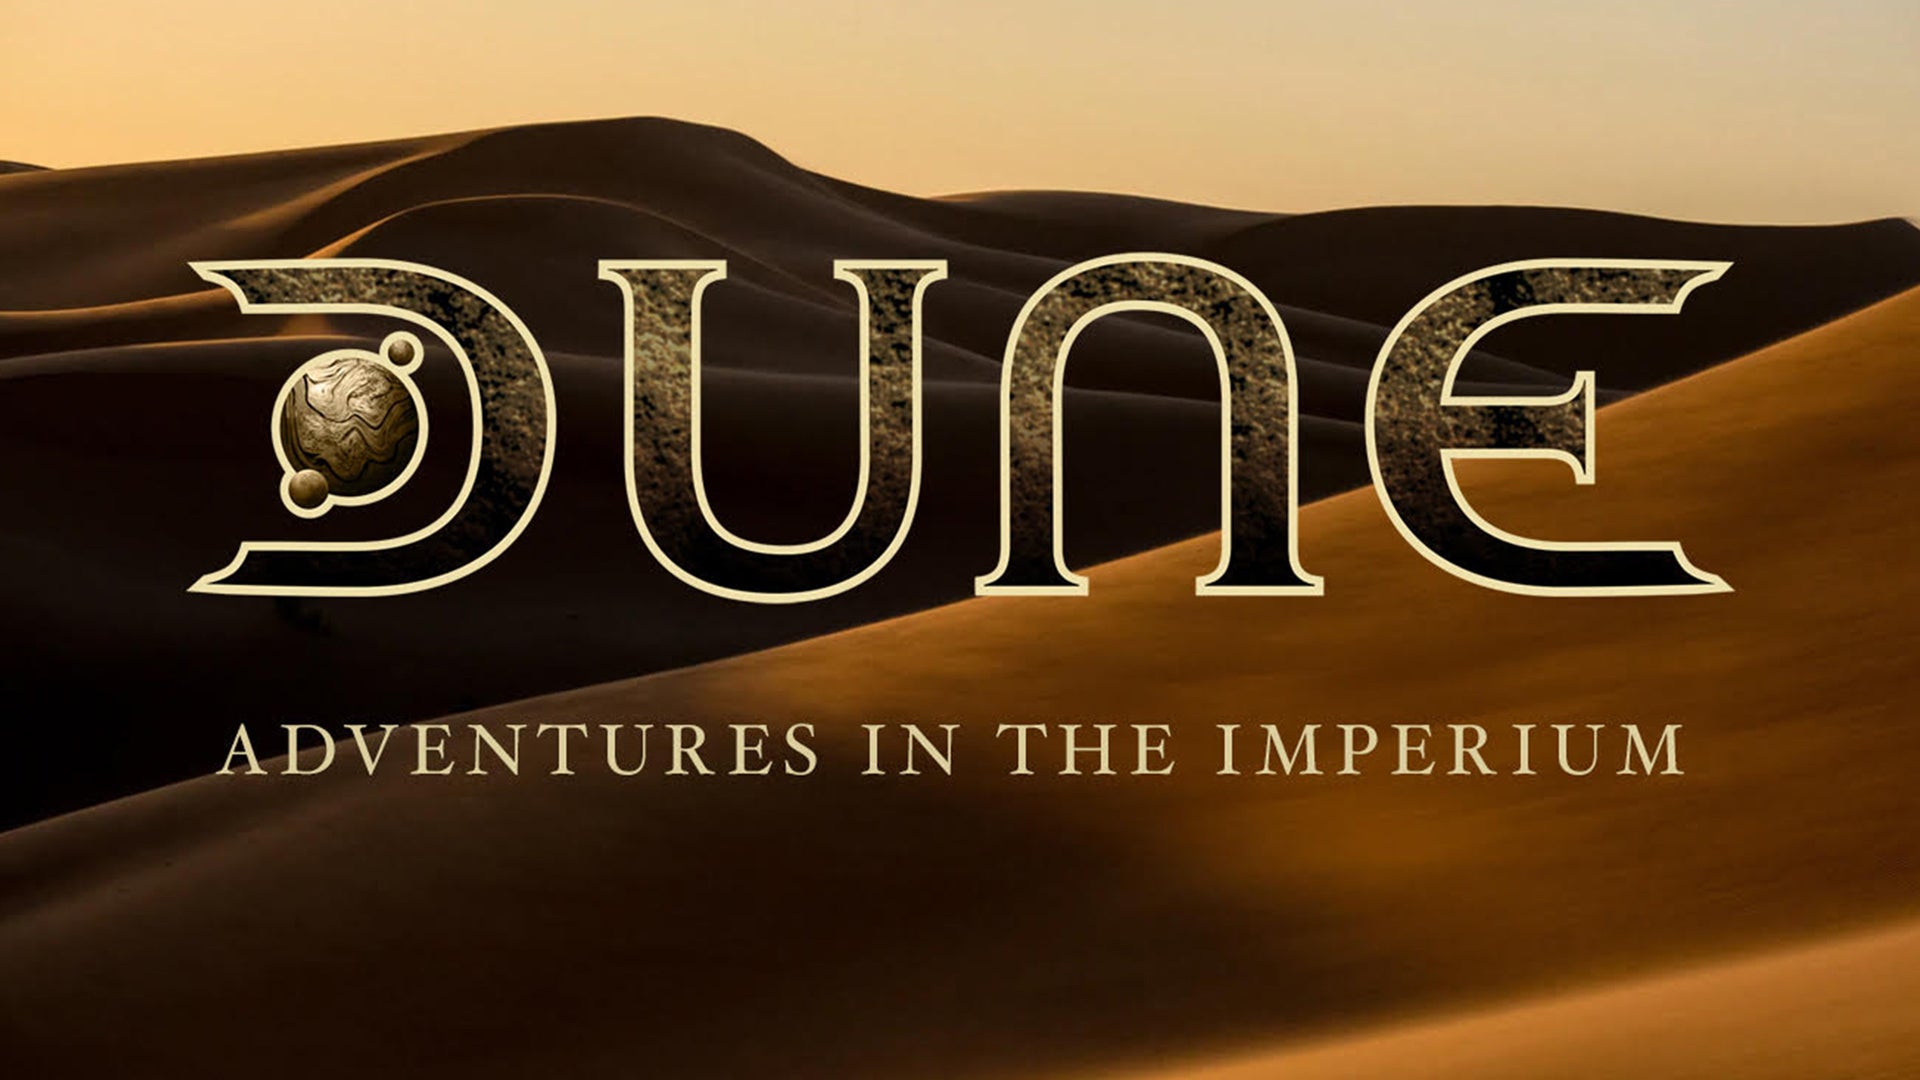 Dune roleplaying game artwork